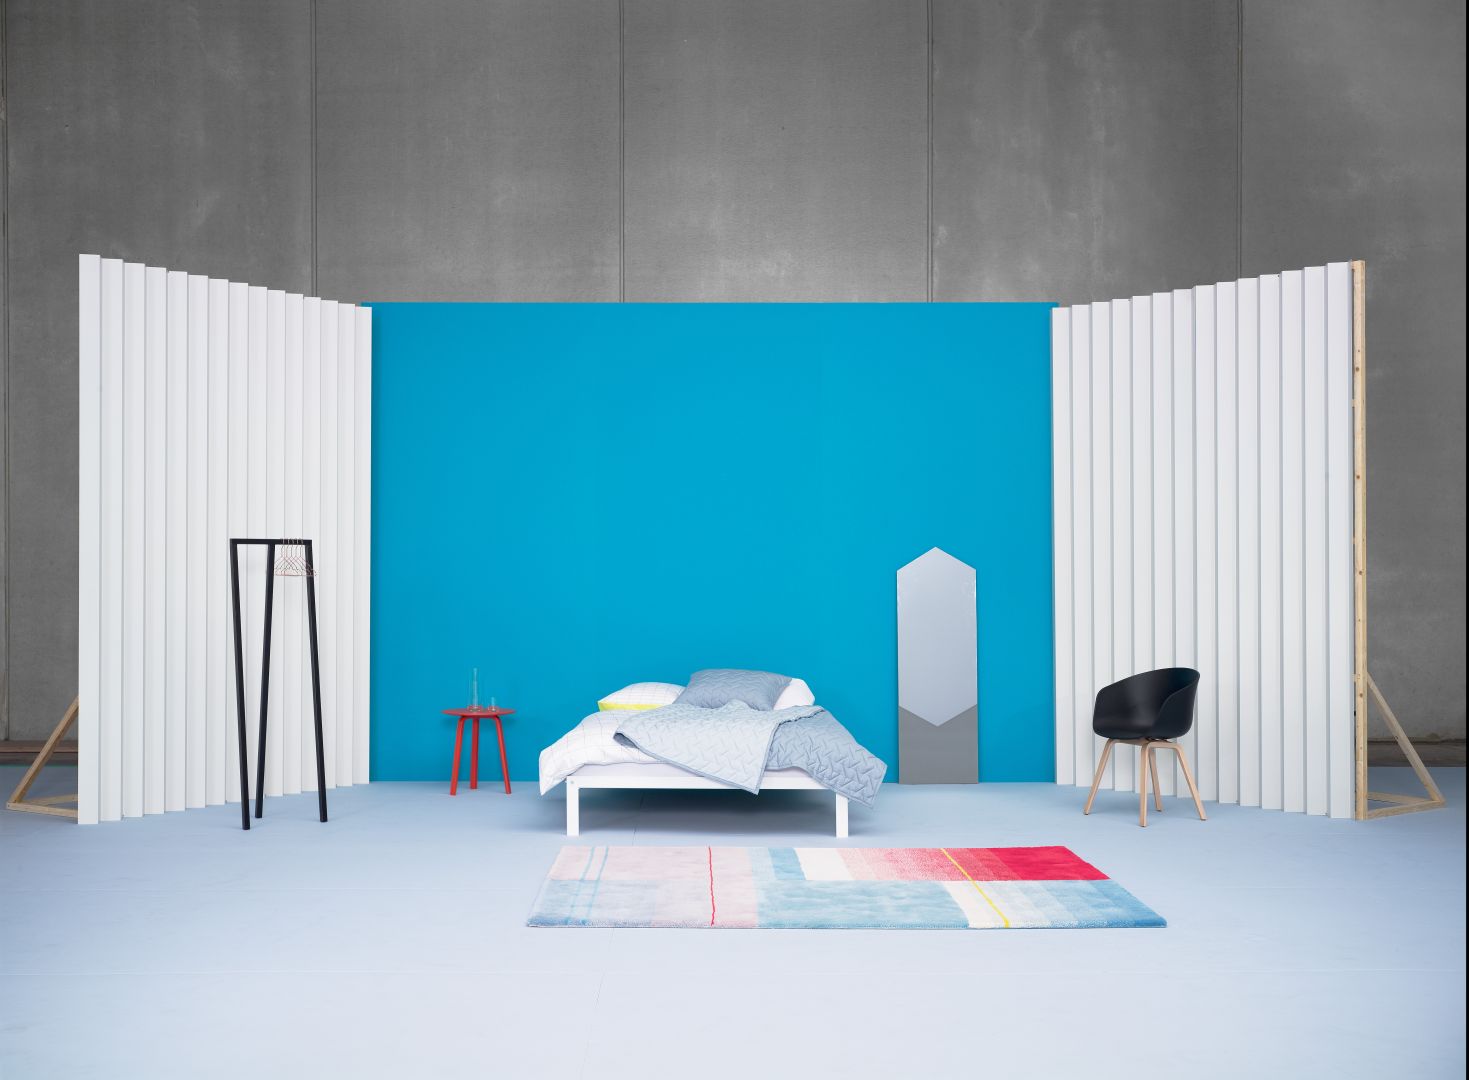 Prosta forma to zalety minimalistycznej sypialni. Fot. Hay